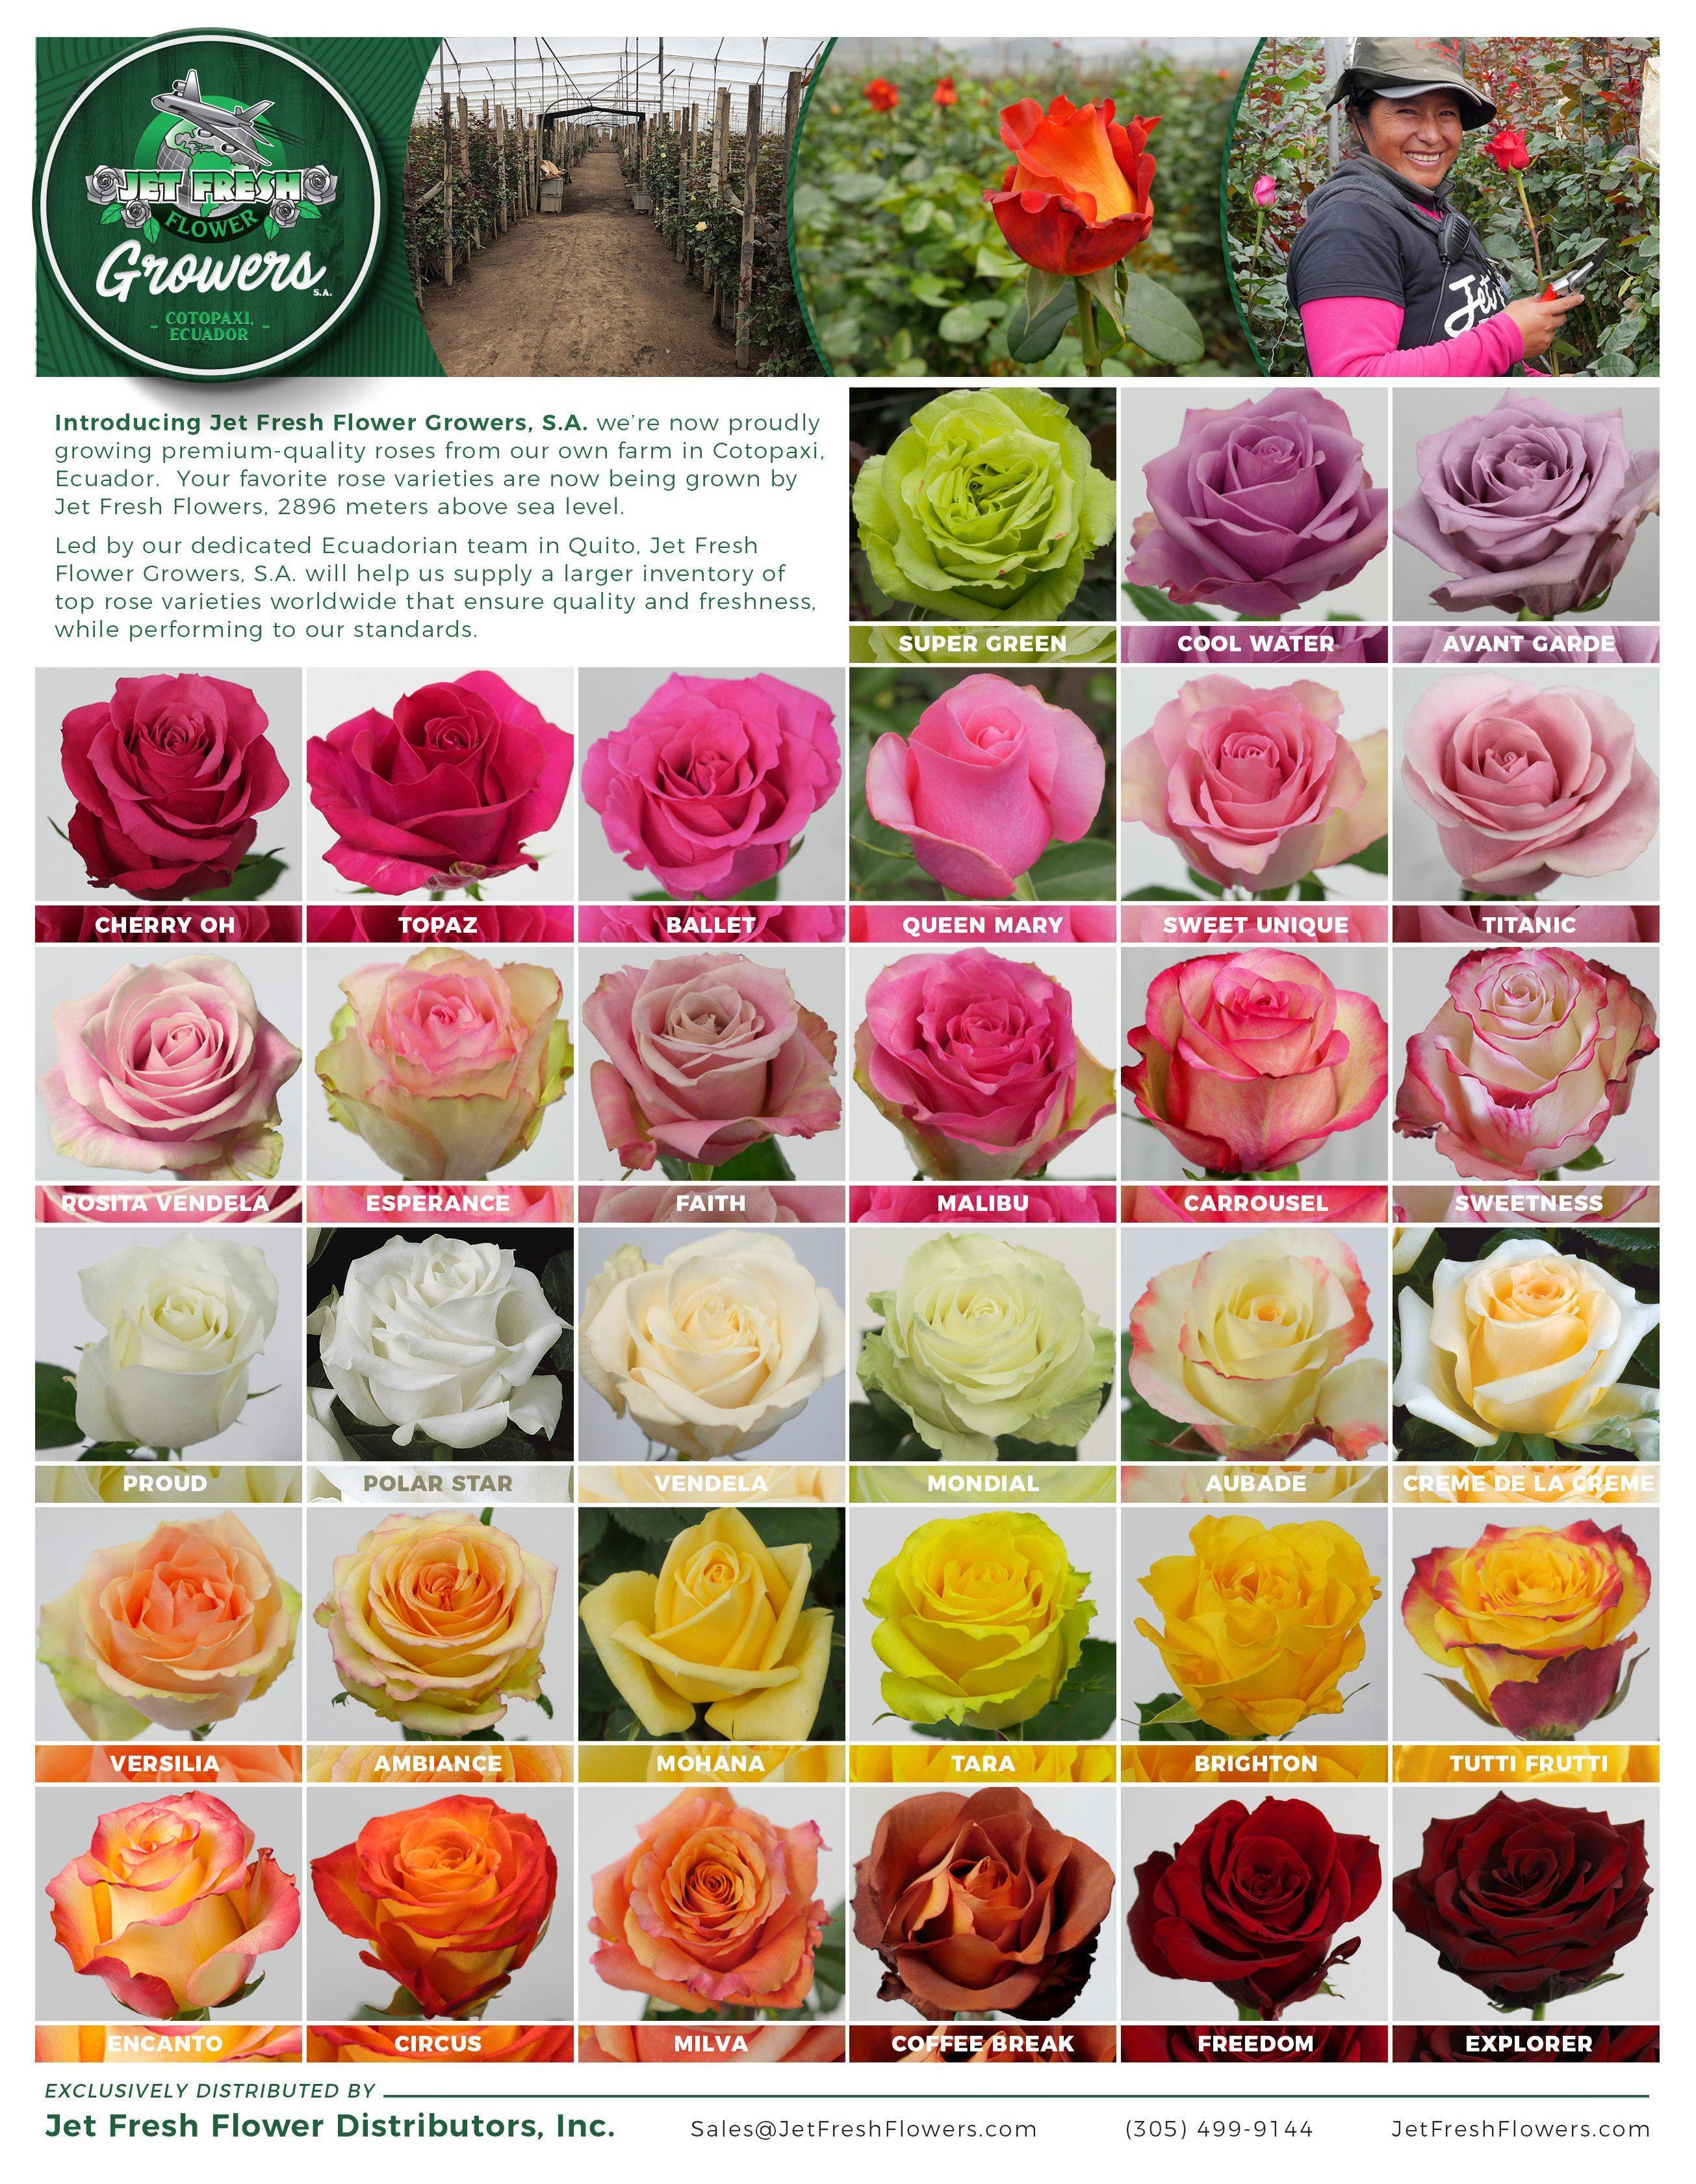 Описание лучших сортов роз: классификация, фото | все, что нужно знать о даче